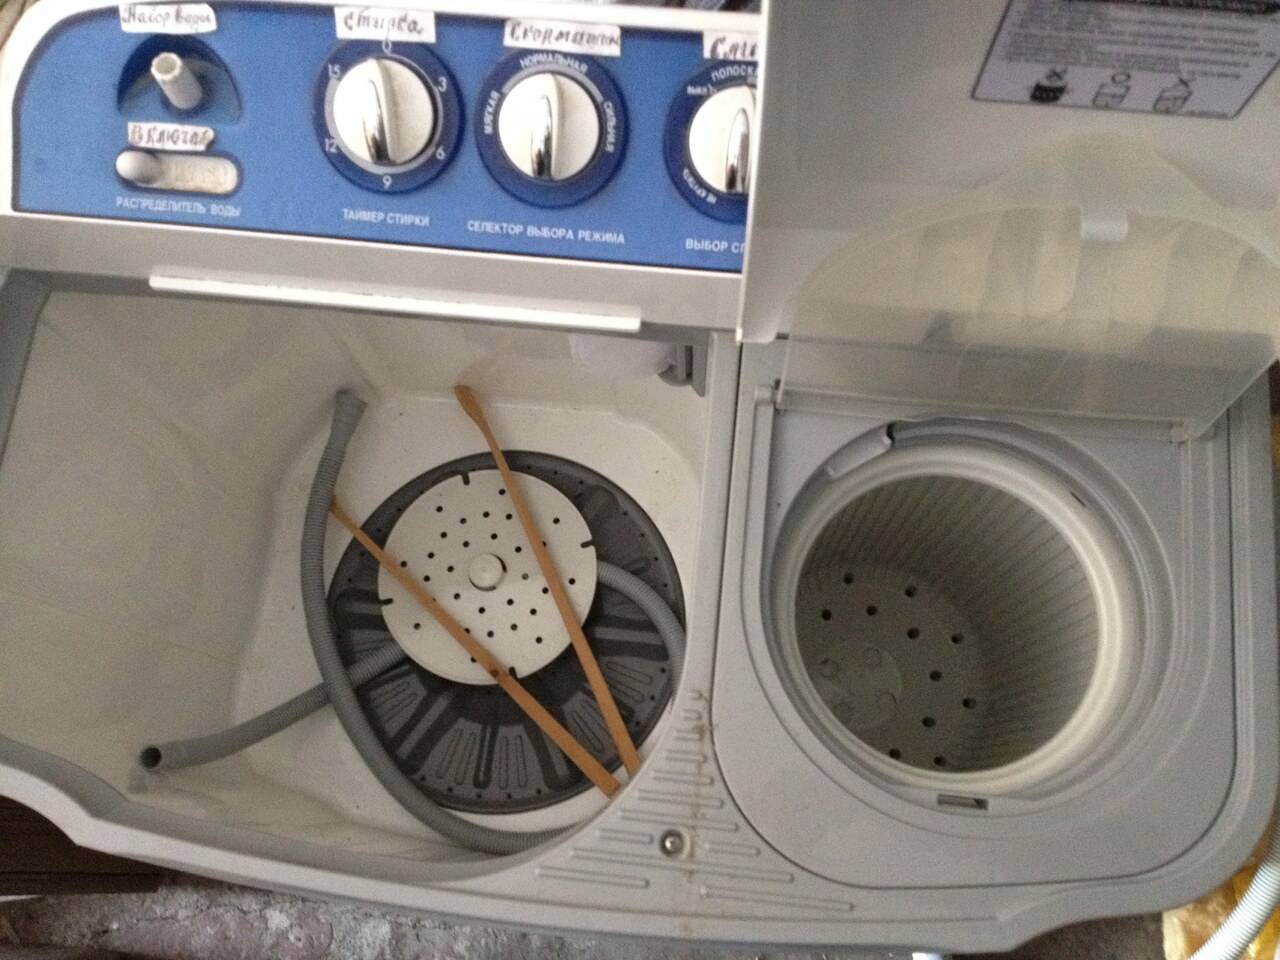 Как выбрать стиральную машину активаторного типа: полезная инструкция для покупателей